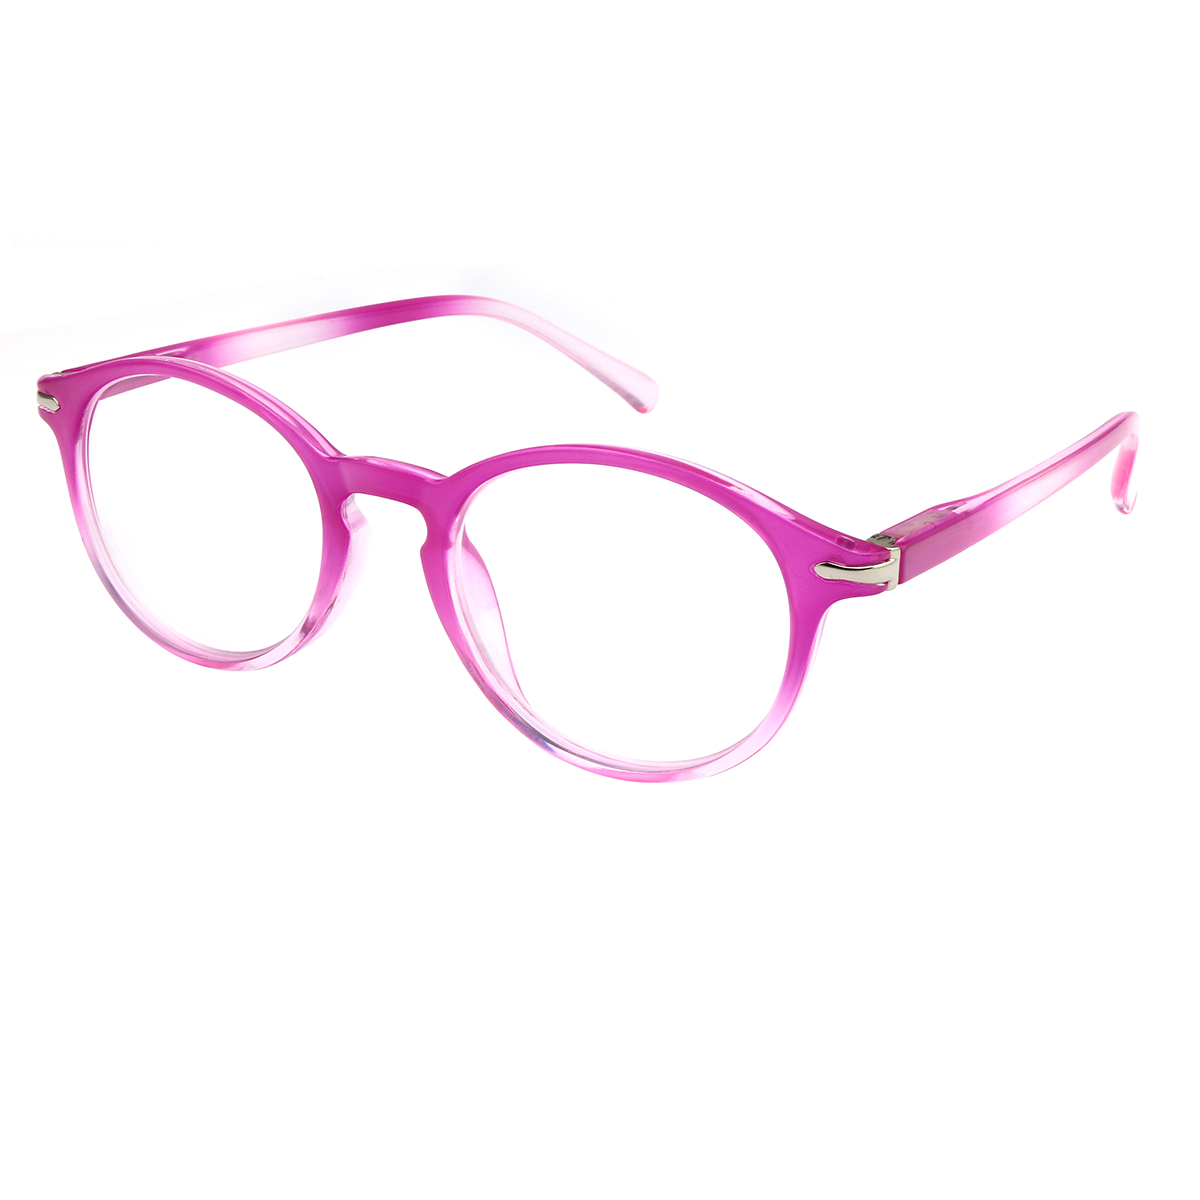 Gallaecia - Oval Purple Reading Glasses for Women